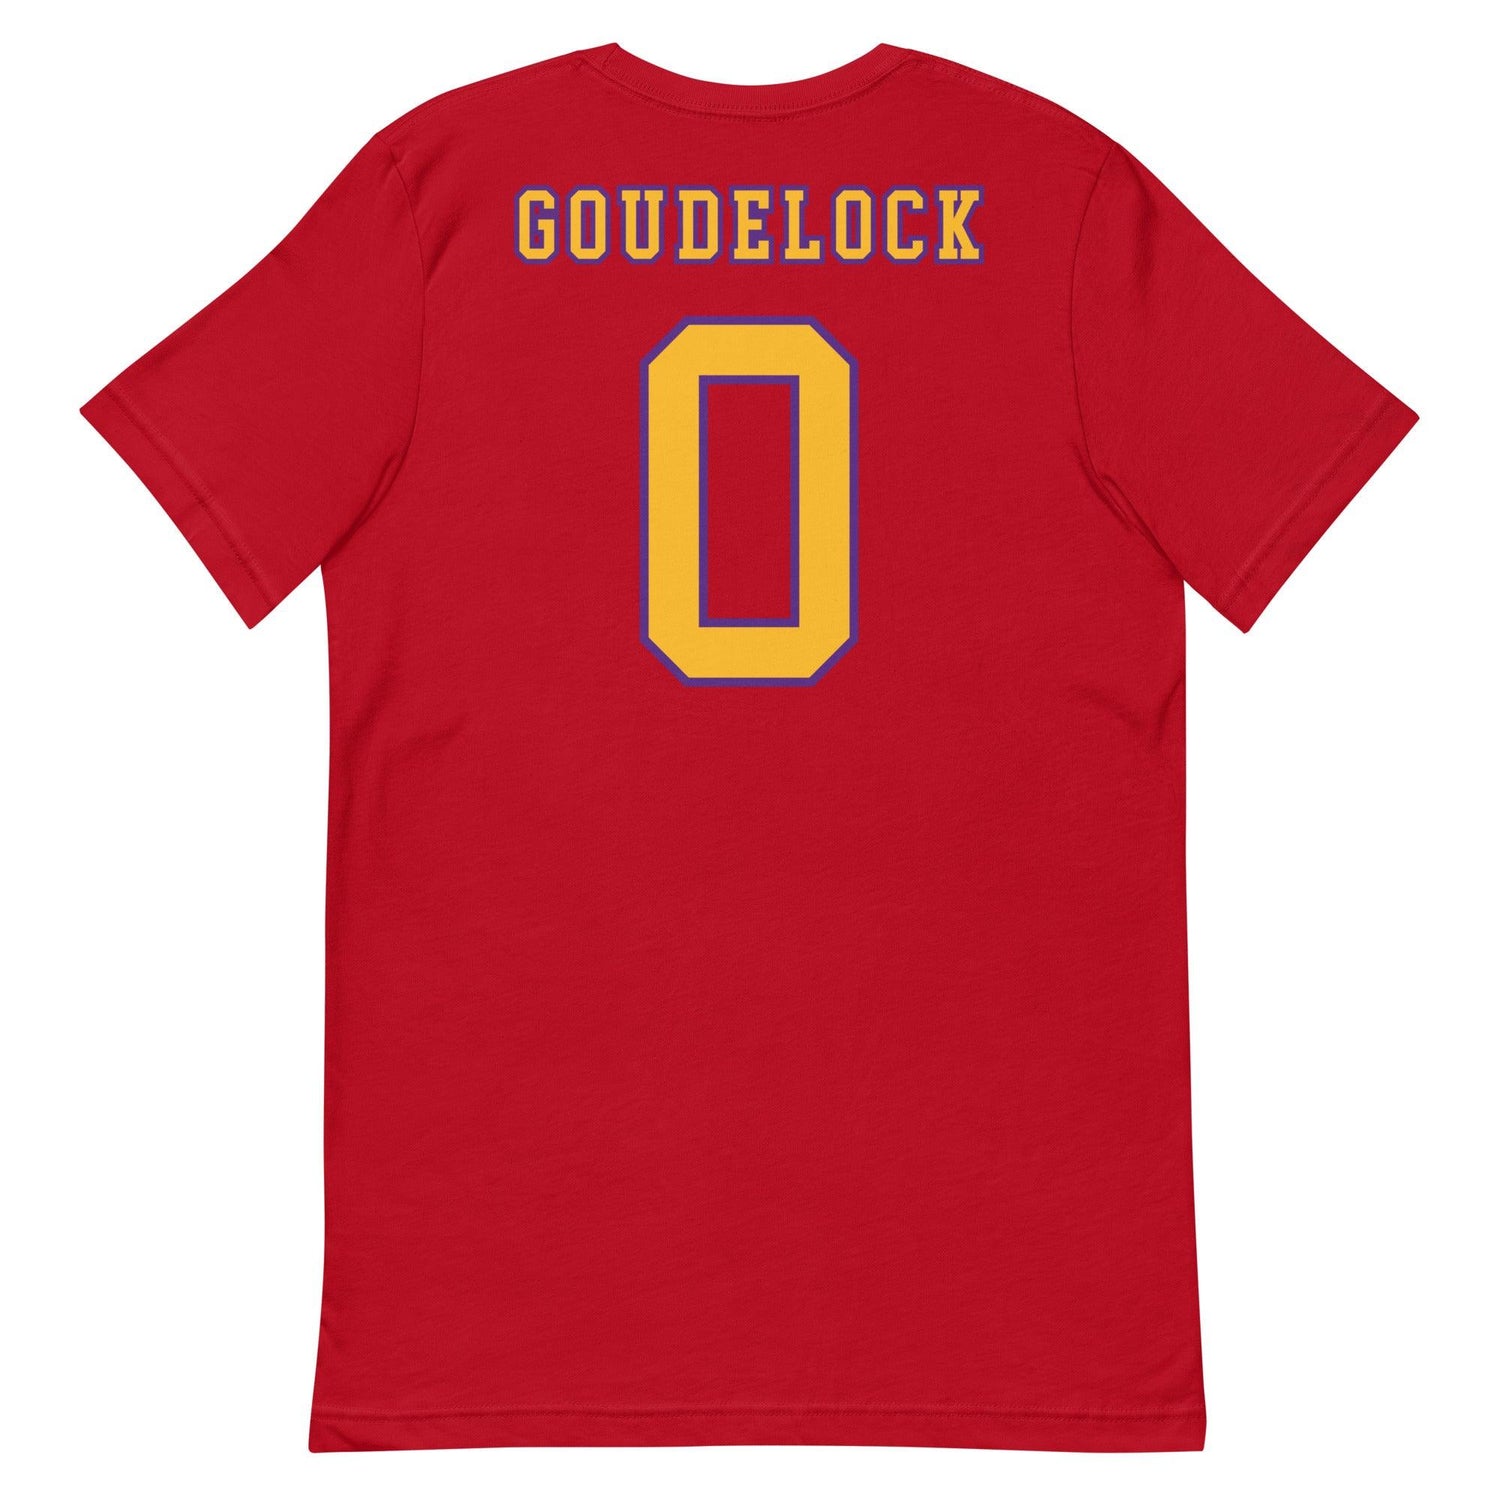 Andrew Goudelock "Jersey" t-shirt - Fan Arch